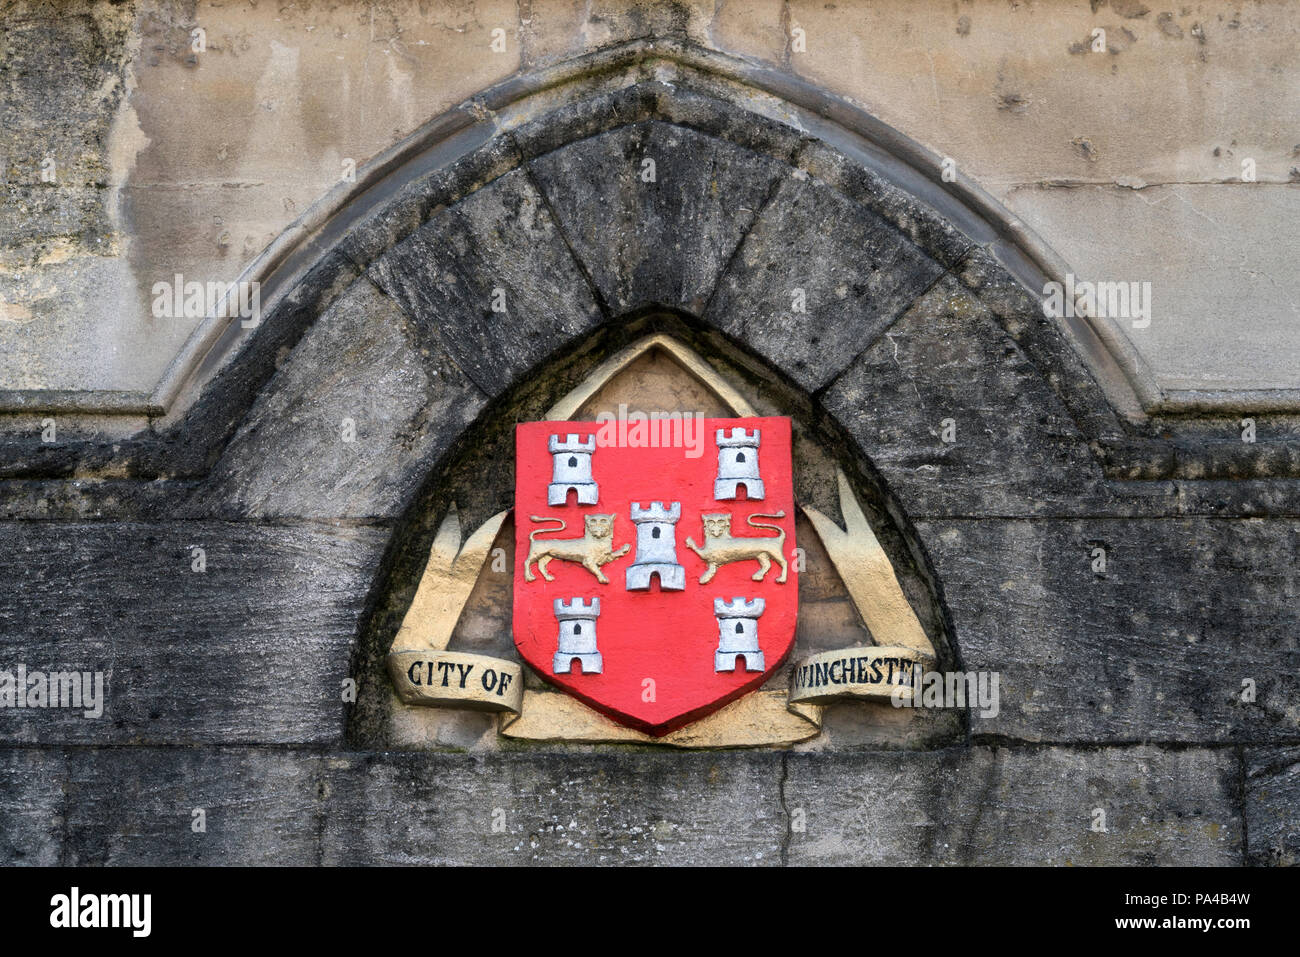 La ville de Winchester's Coat of Arms comme vu sur l'extérieur de l'édifice Guildhall, Hampshire, Angleterre. Banque D'Images